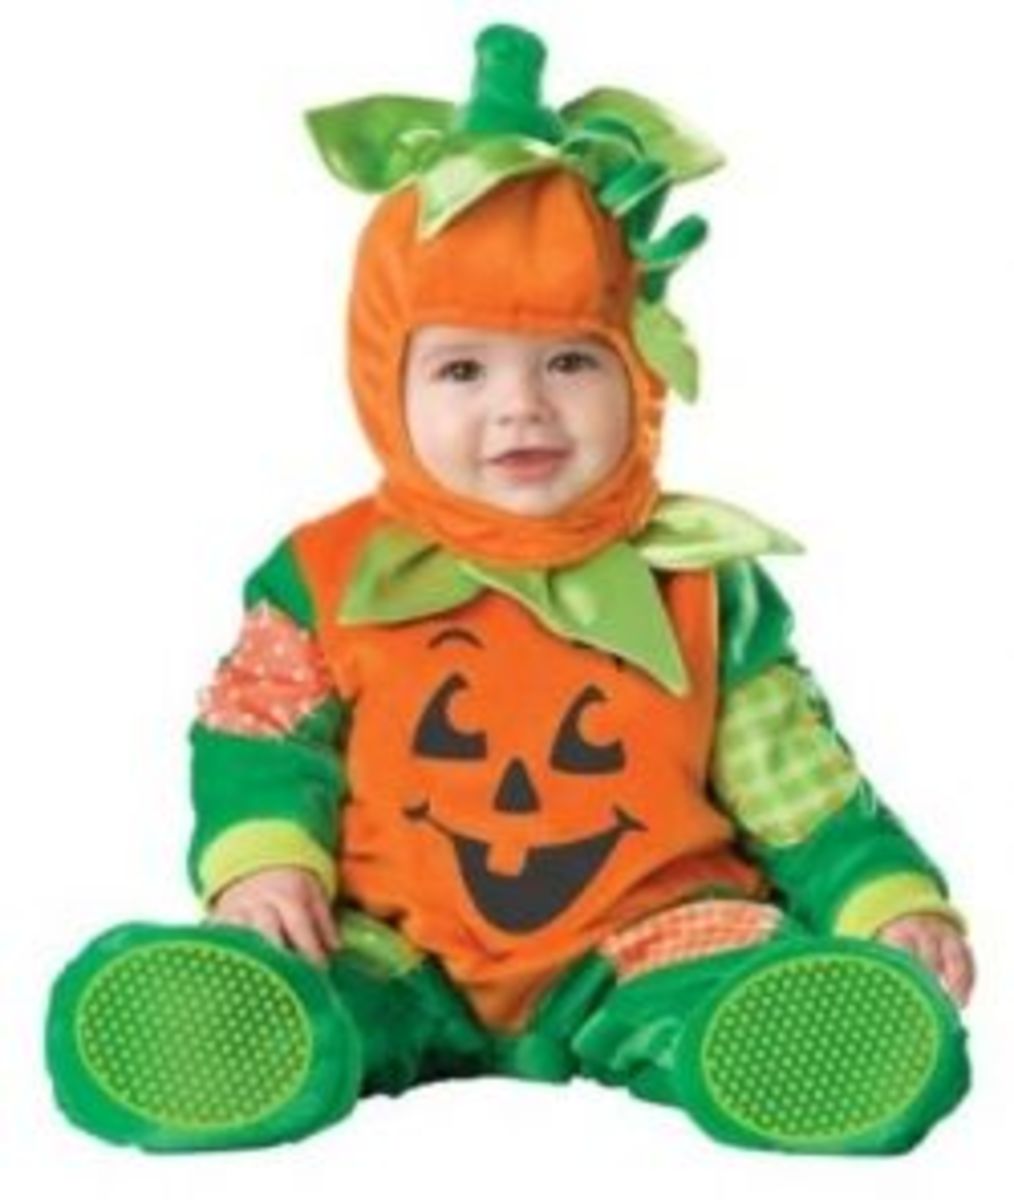 Pumpkin Baby Costumes